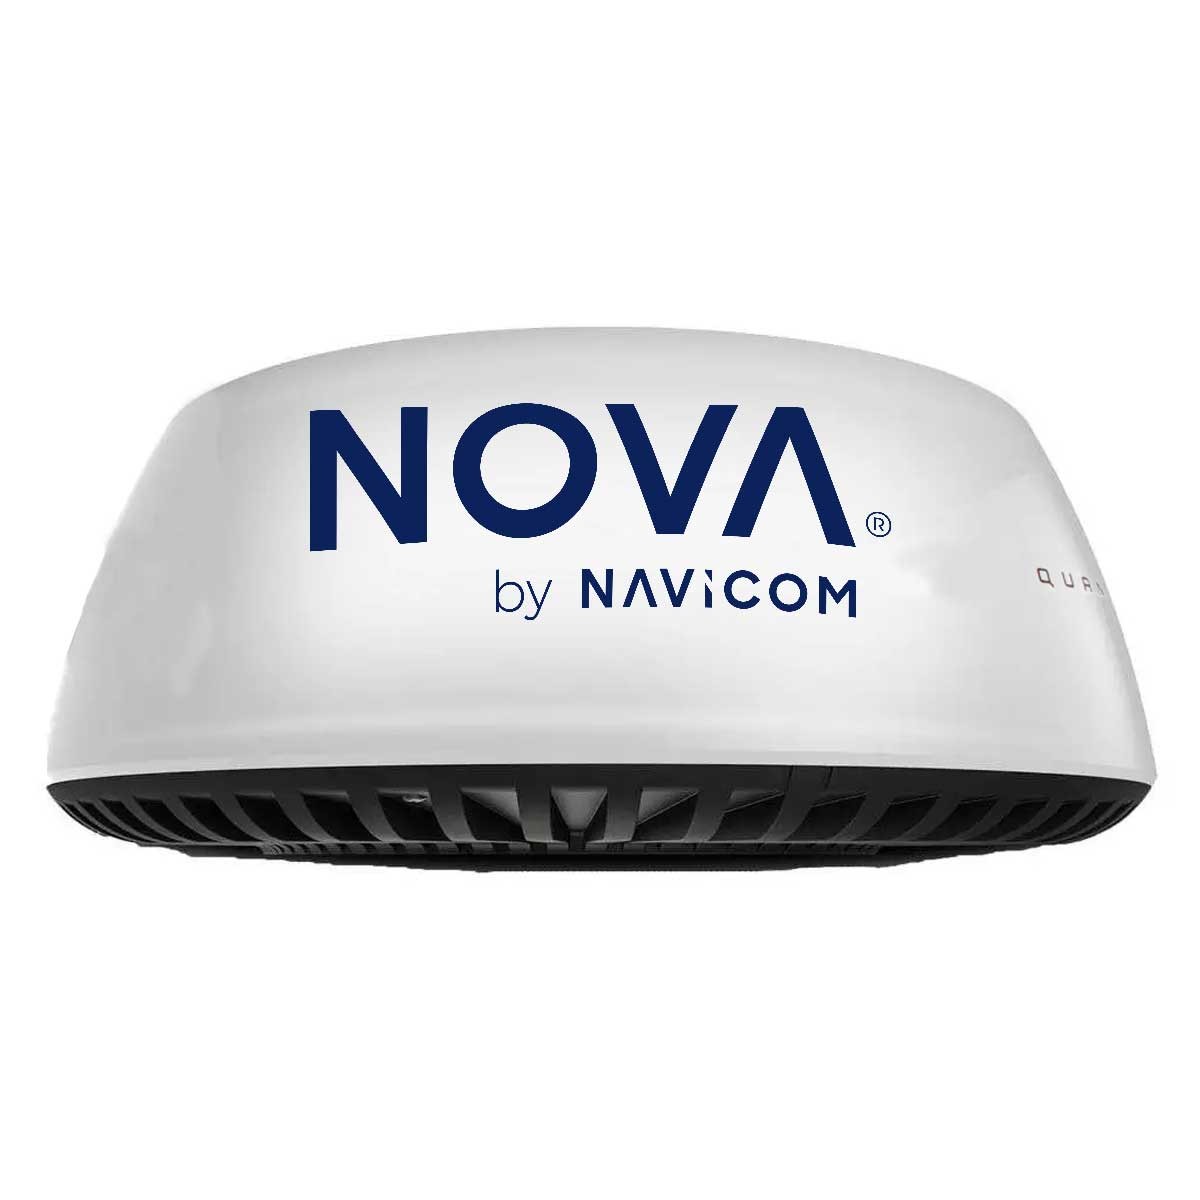 Radar NOVA by Navicom